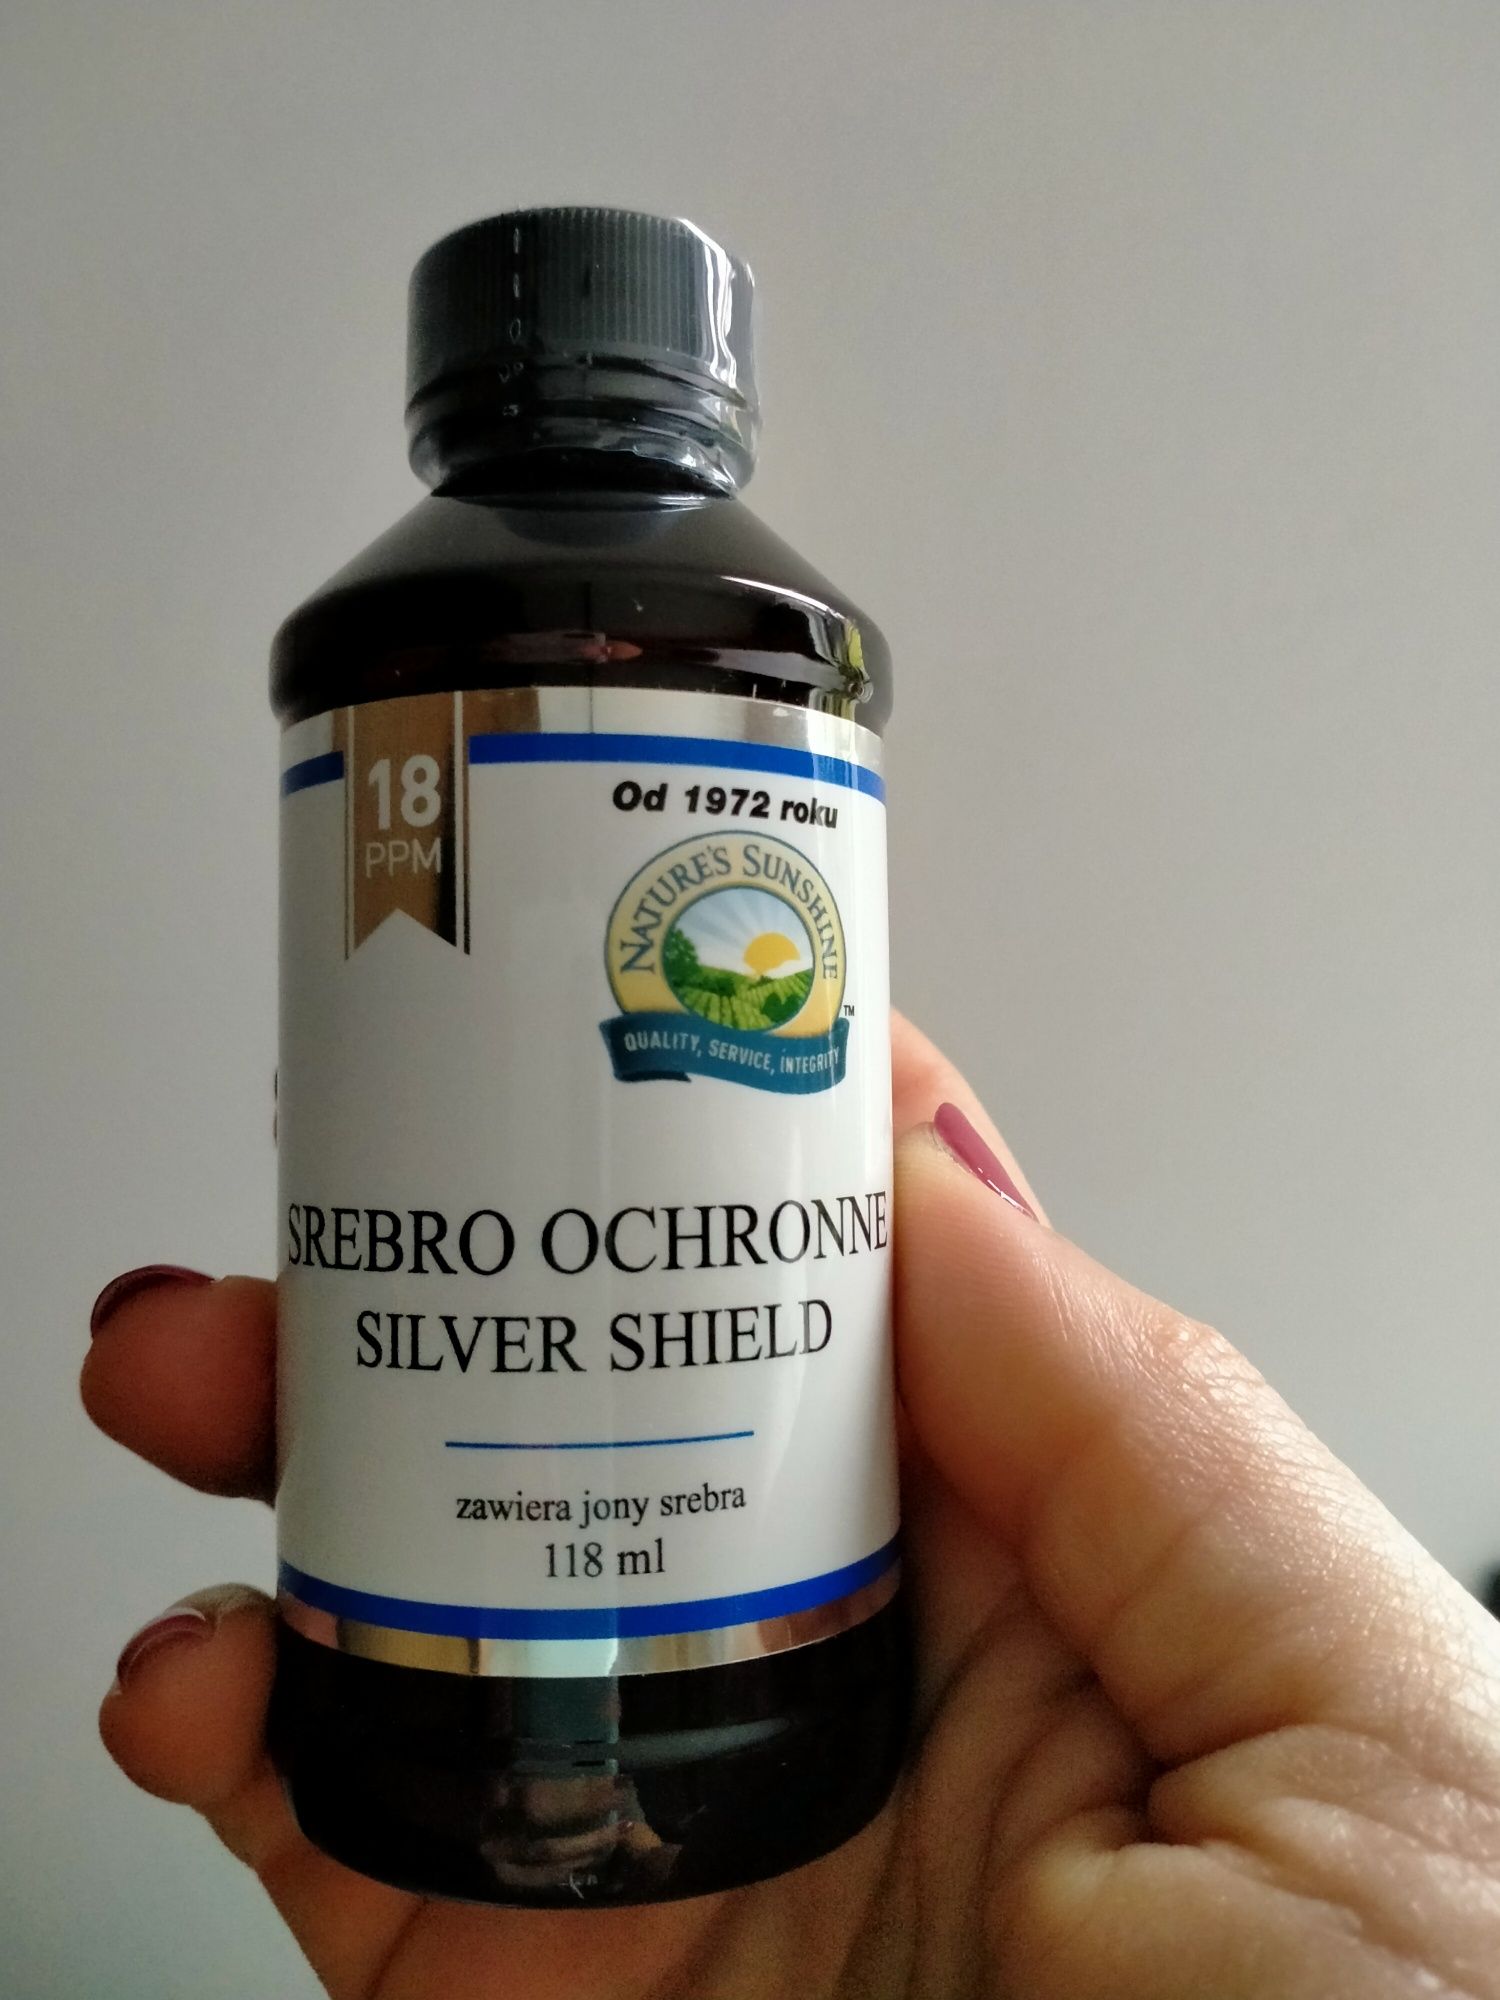 Srebro ochronne silver shield 118 ml